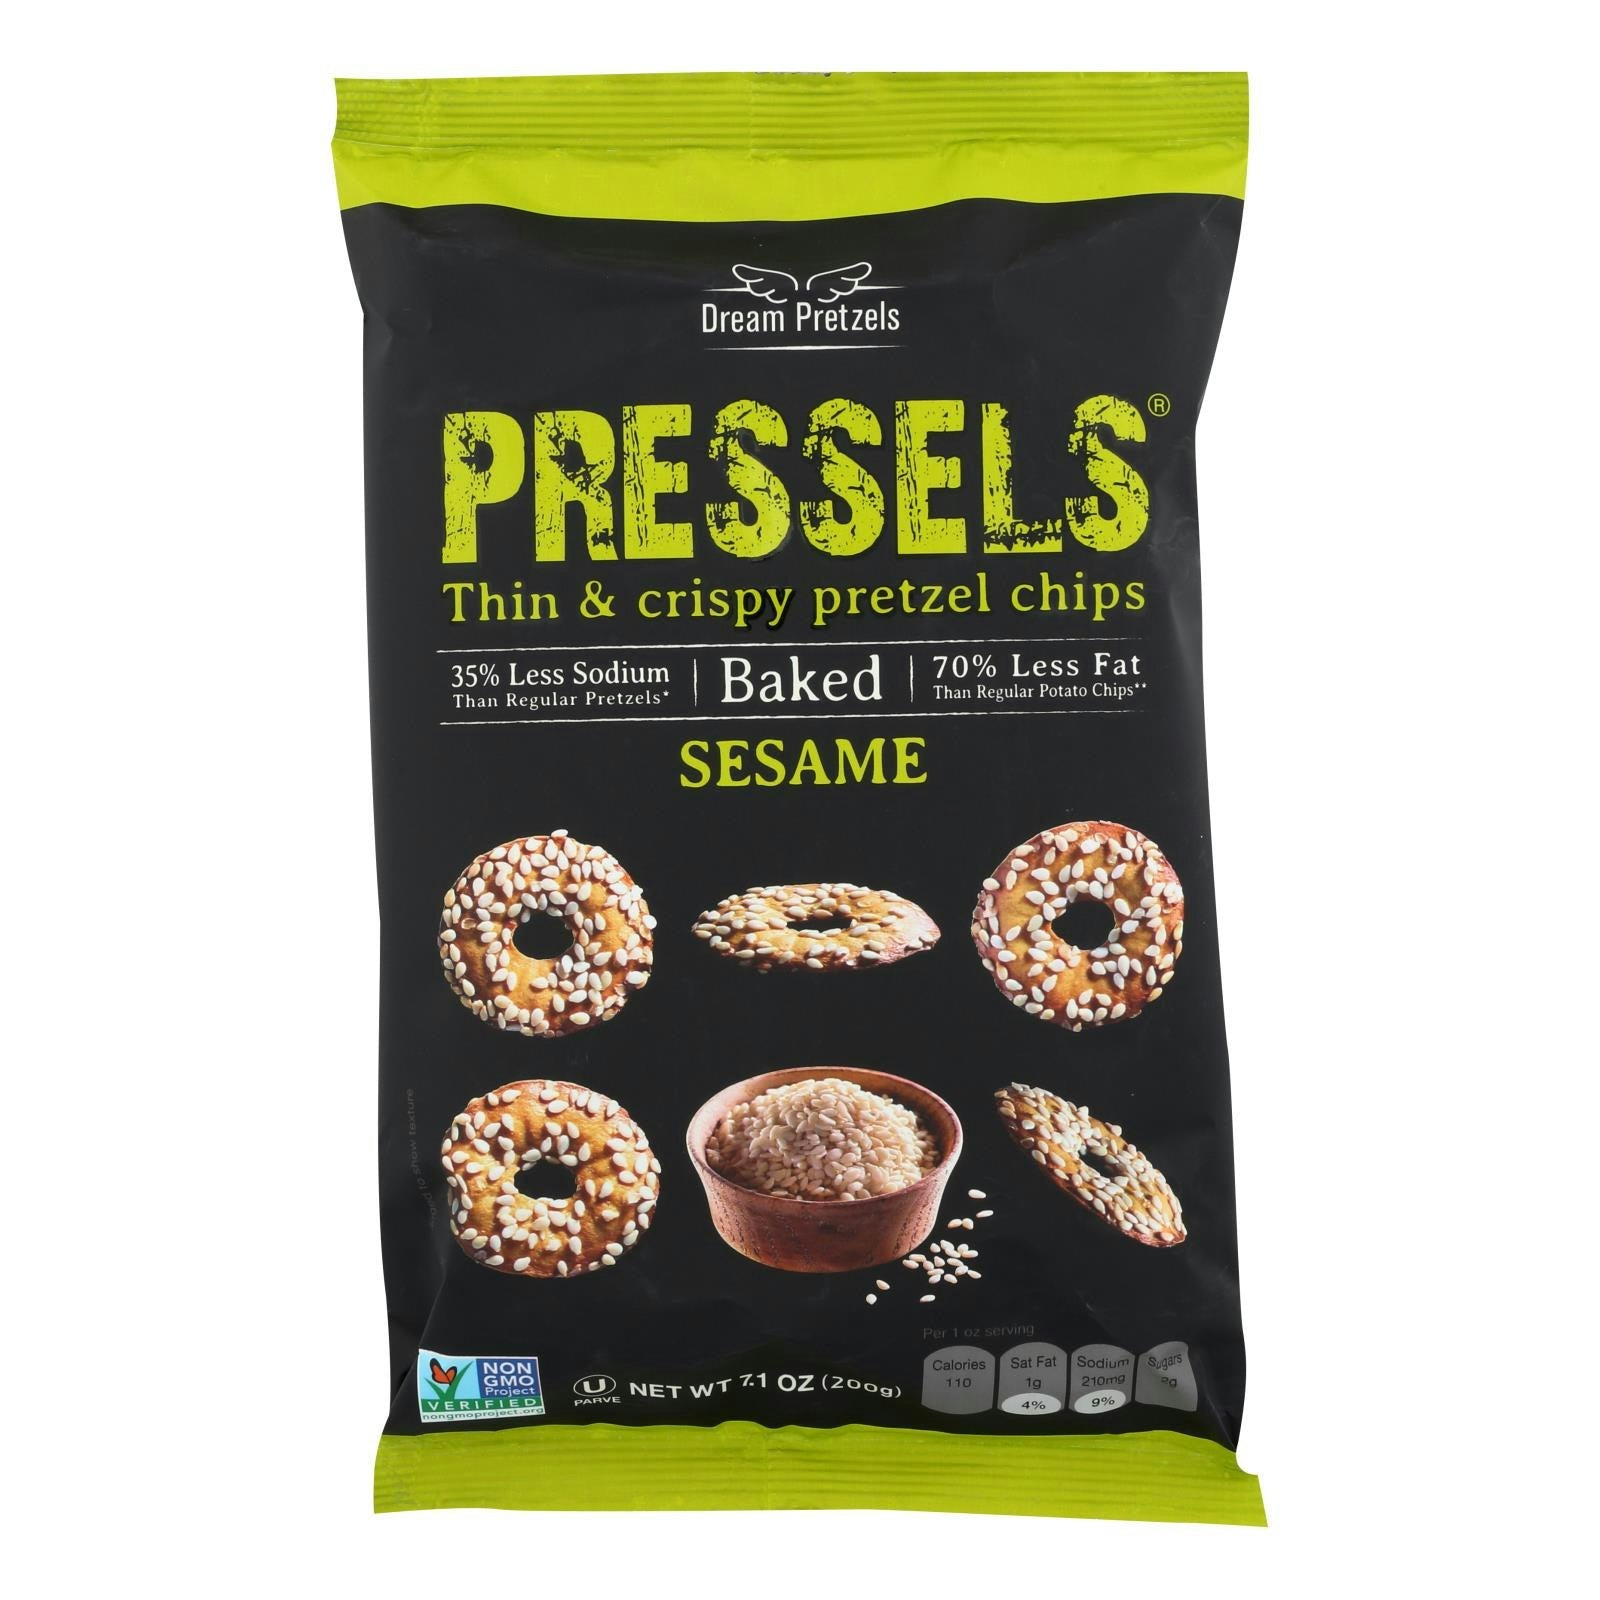 Dream Pretzels Pressels Sesame Natural 7.1 Oz Pack of 12